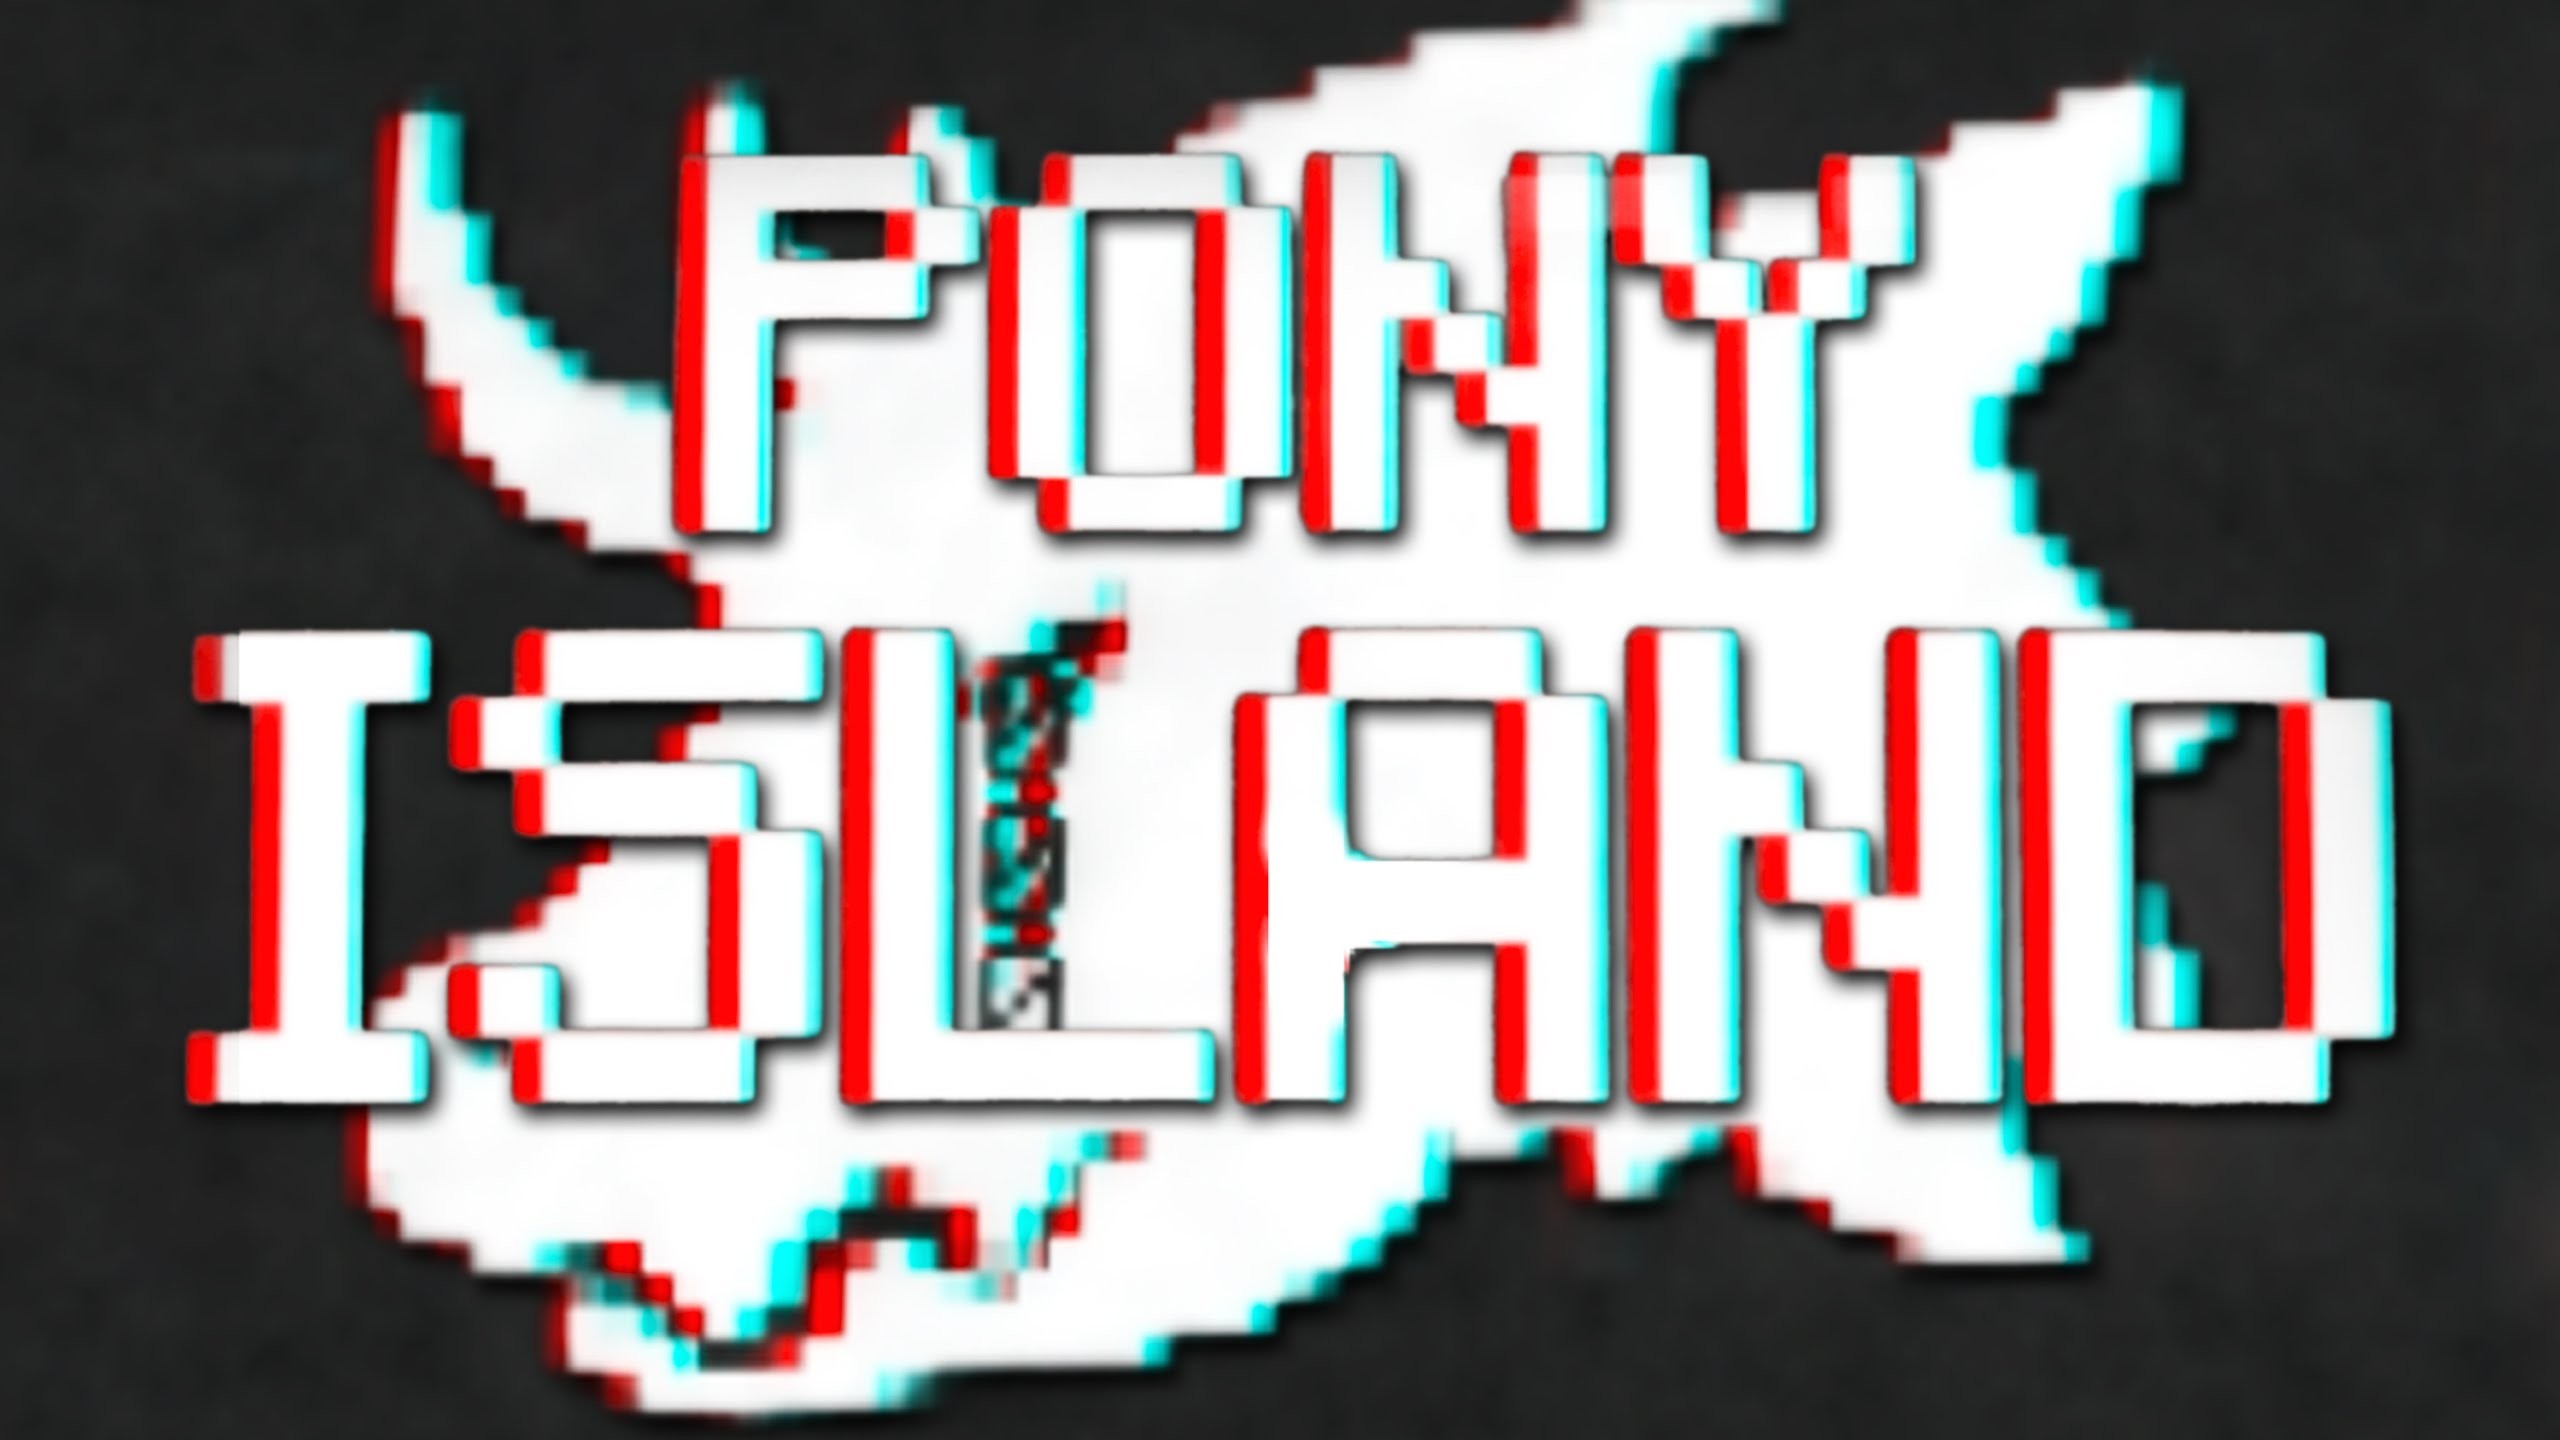 2560x1440 Pony Island #1 - YouTube